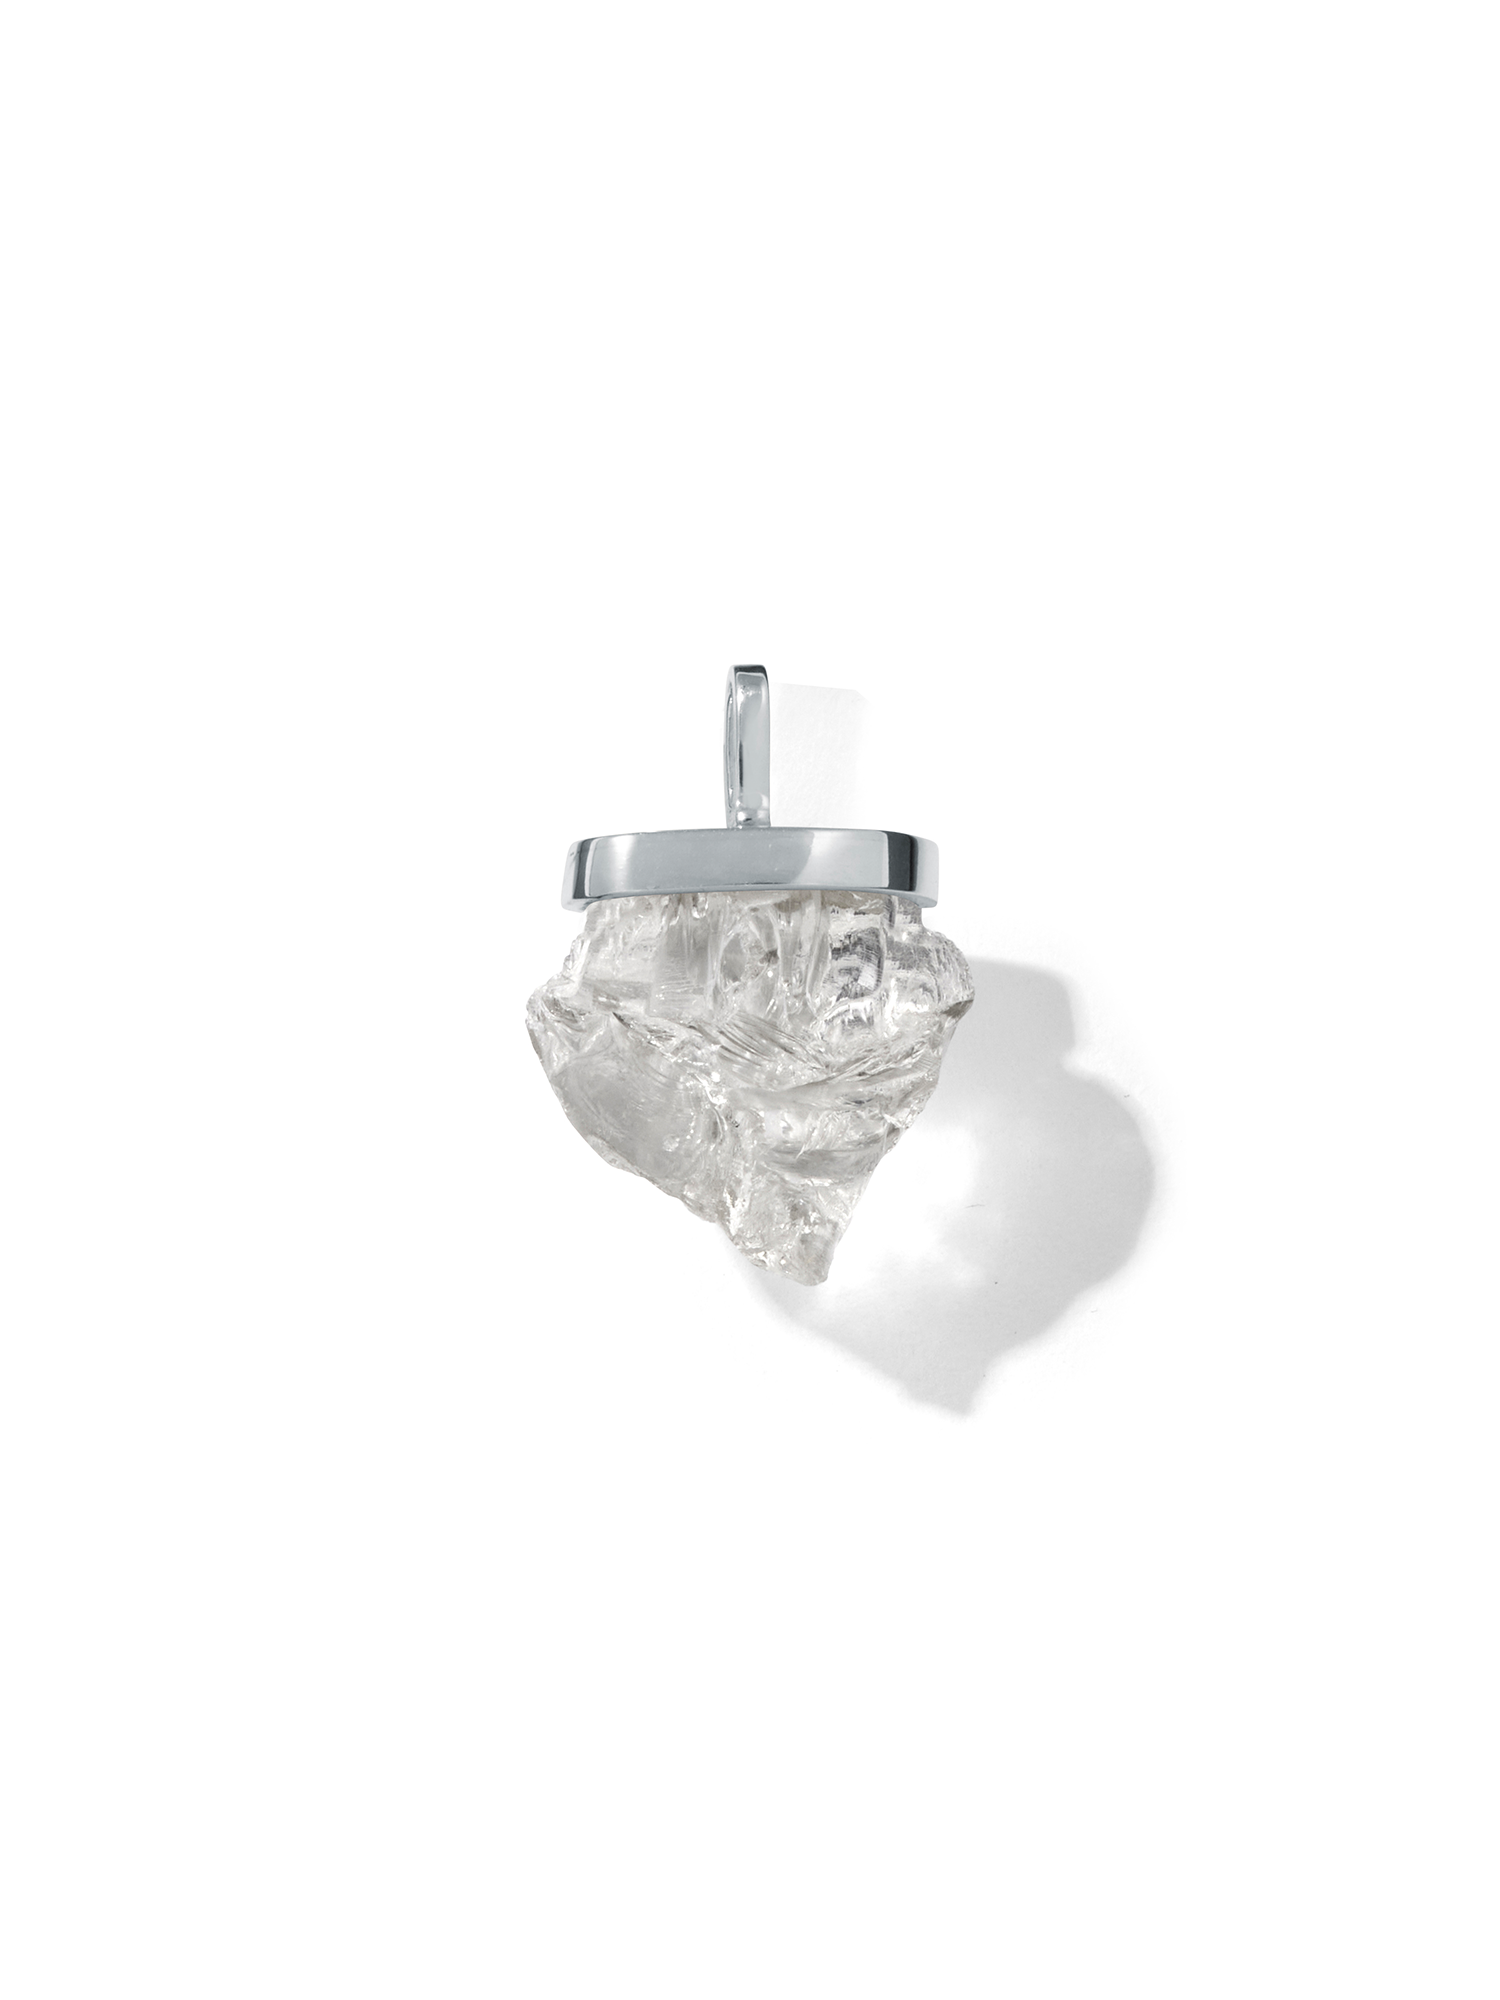 raw crystal necklace charm | clear quartz